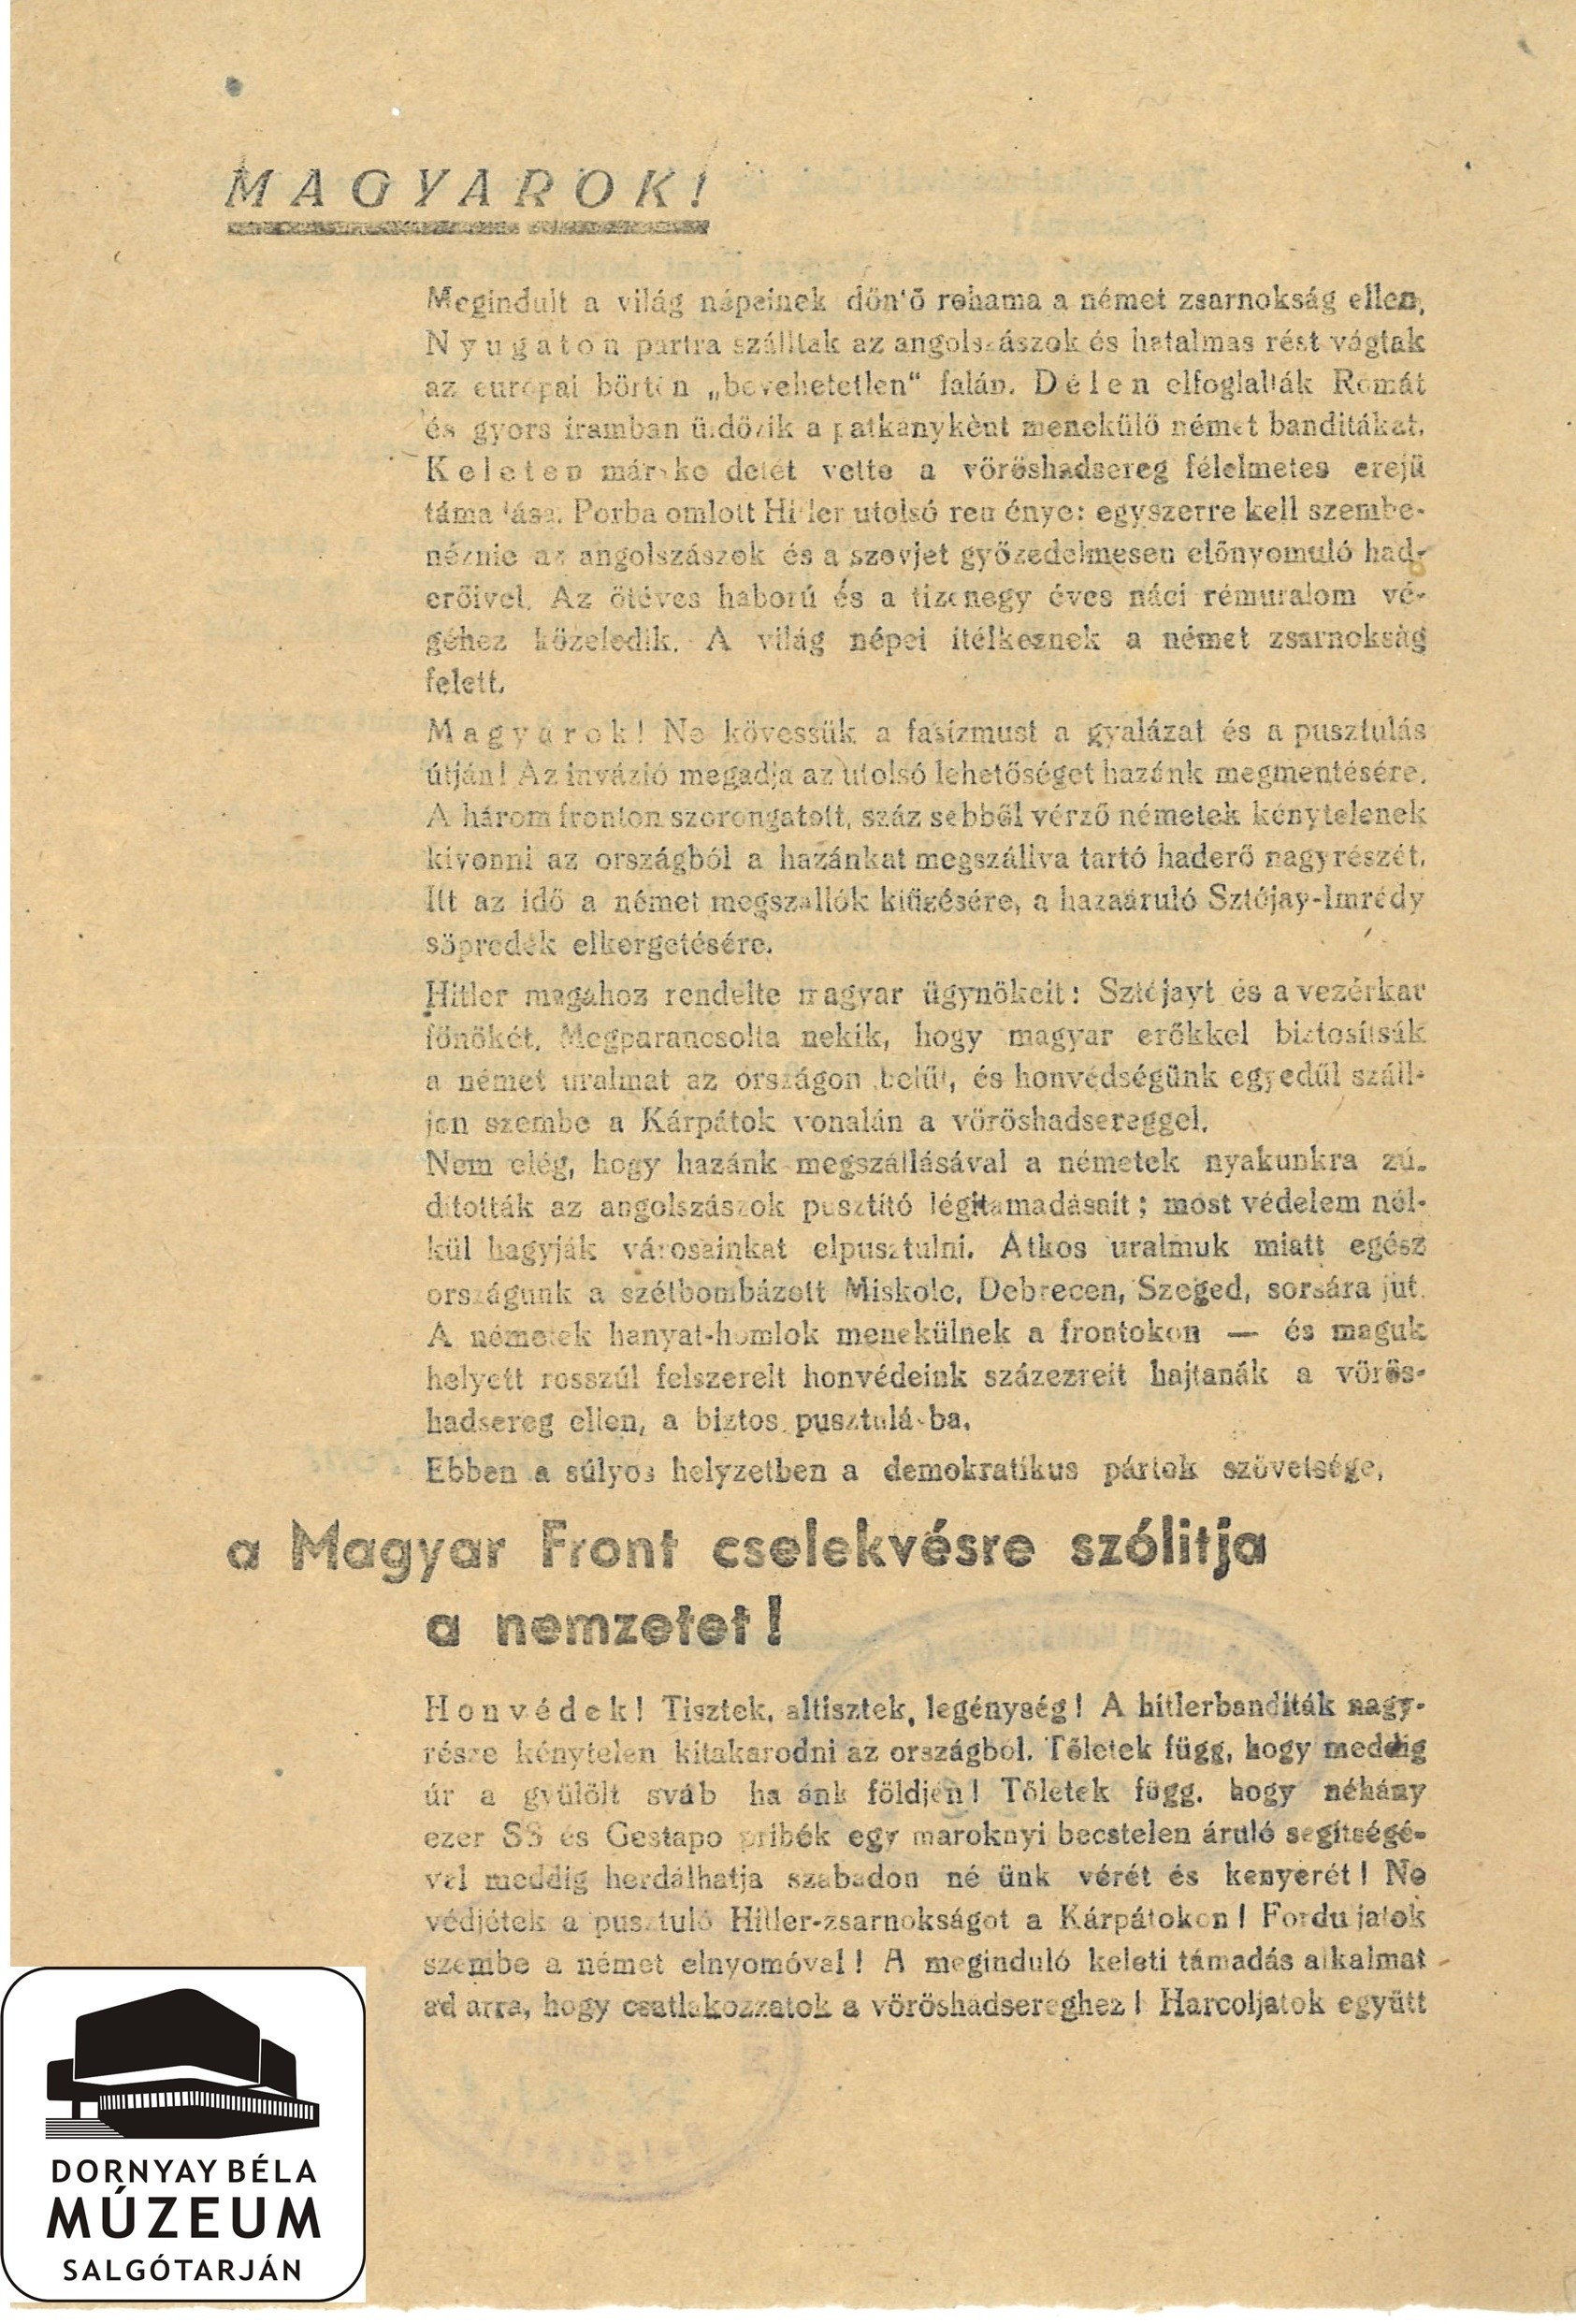 A Magyar Front felhívása (Dornyay Béla Múzeum, Salgótarján CC BY-NC-SA)